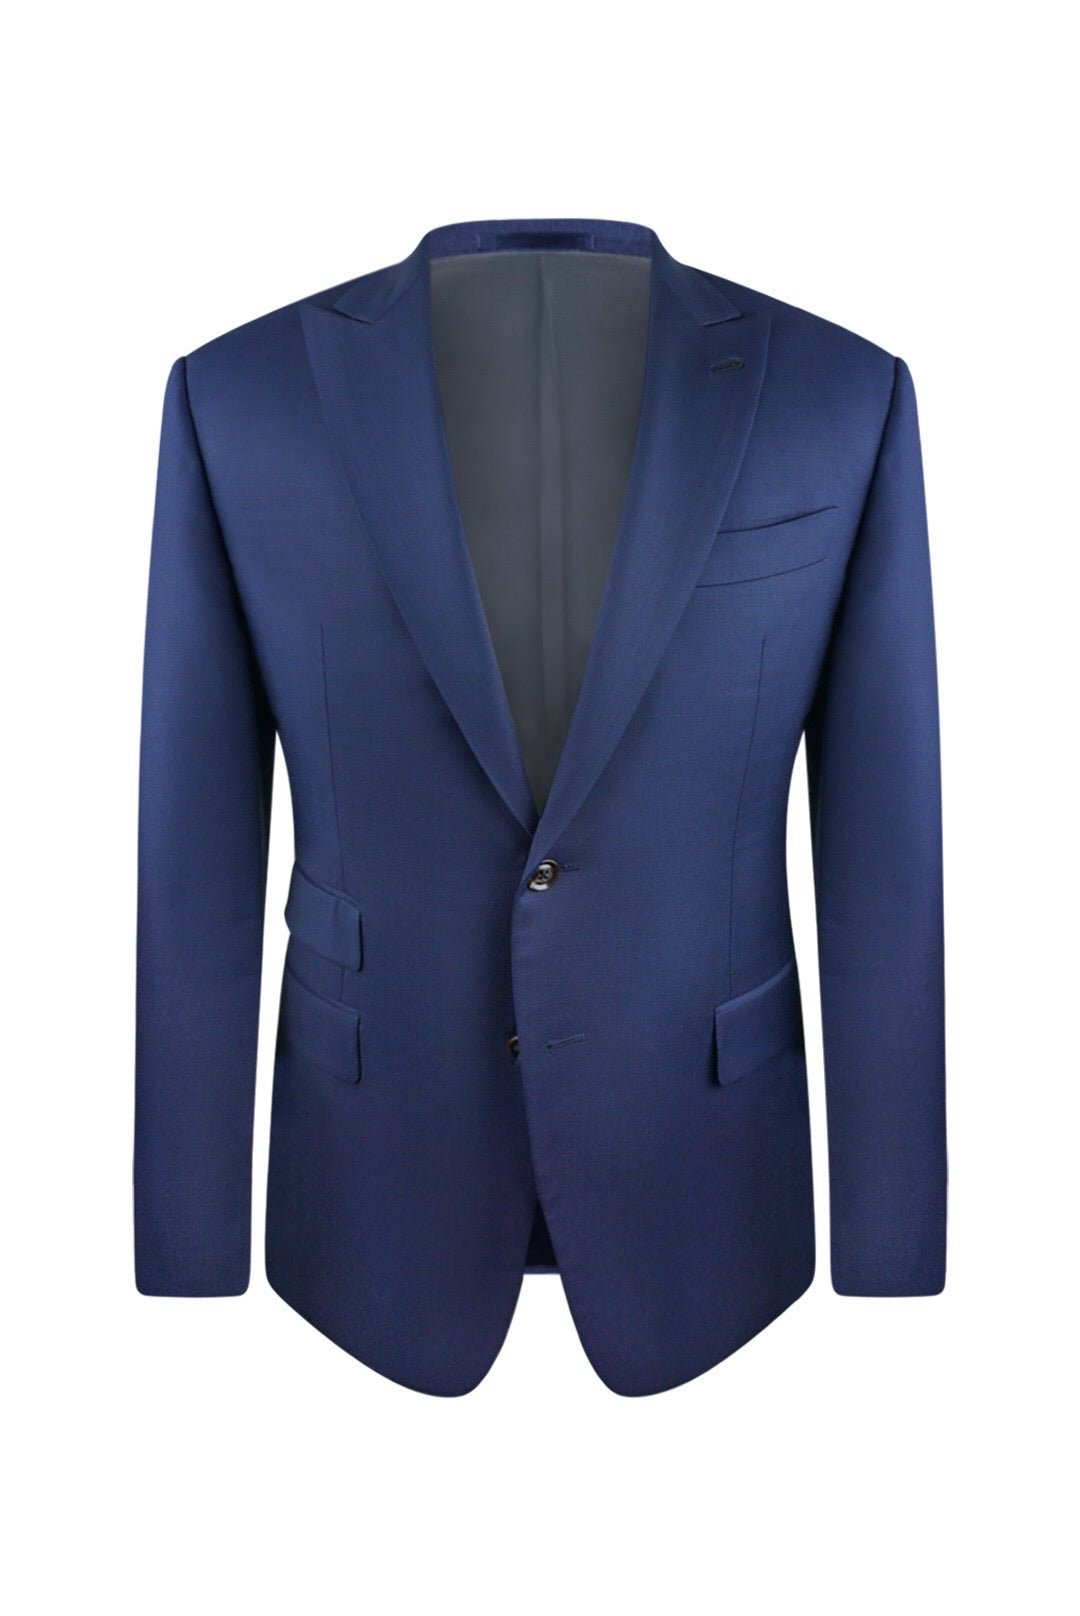 Classy Slim Fit Dinner Suits for Men | 3 Piece Tuxedos – Flex Suits